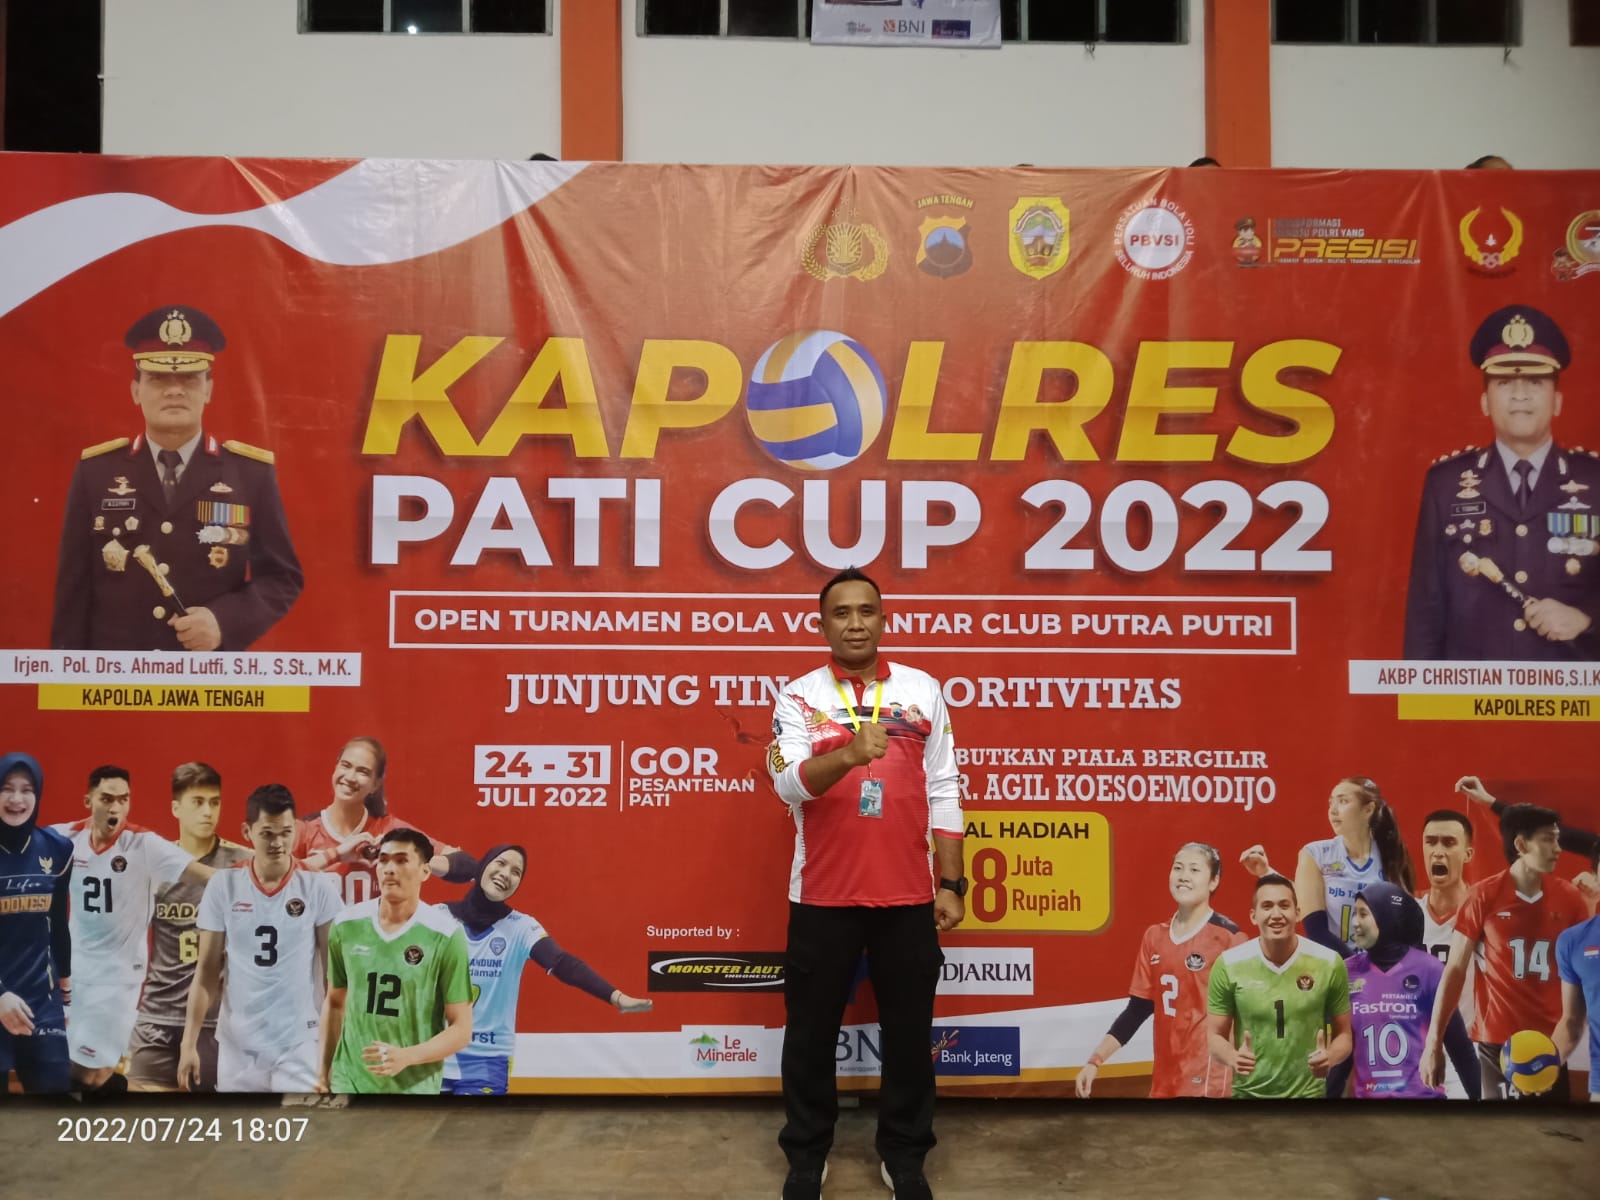 Ketua panitia Kapolres Pati Cup 2022, Kompol Asfa'uri